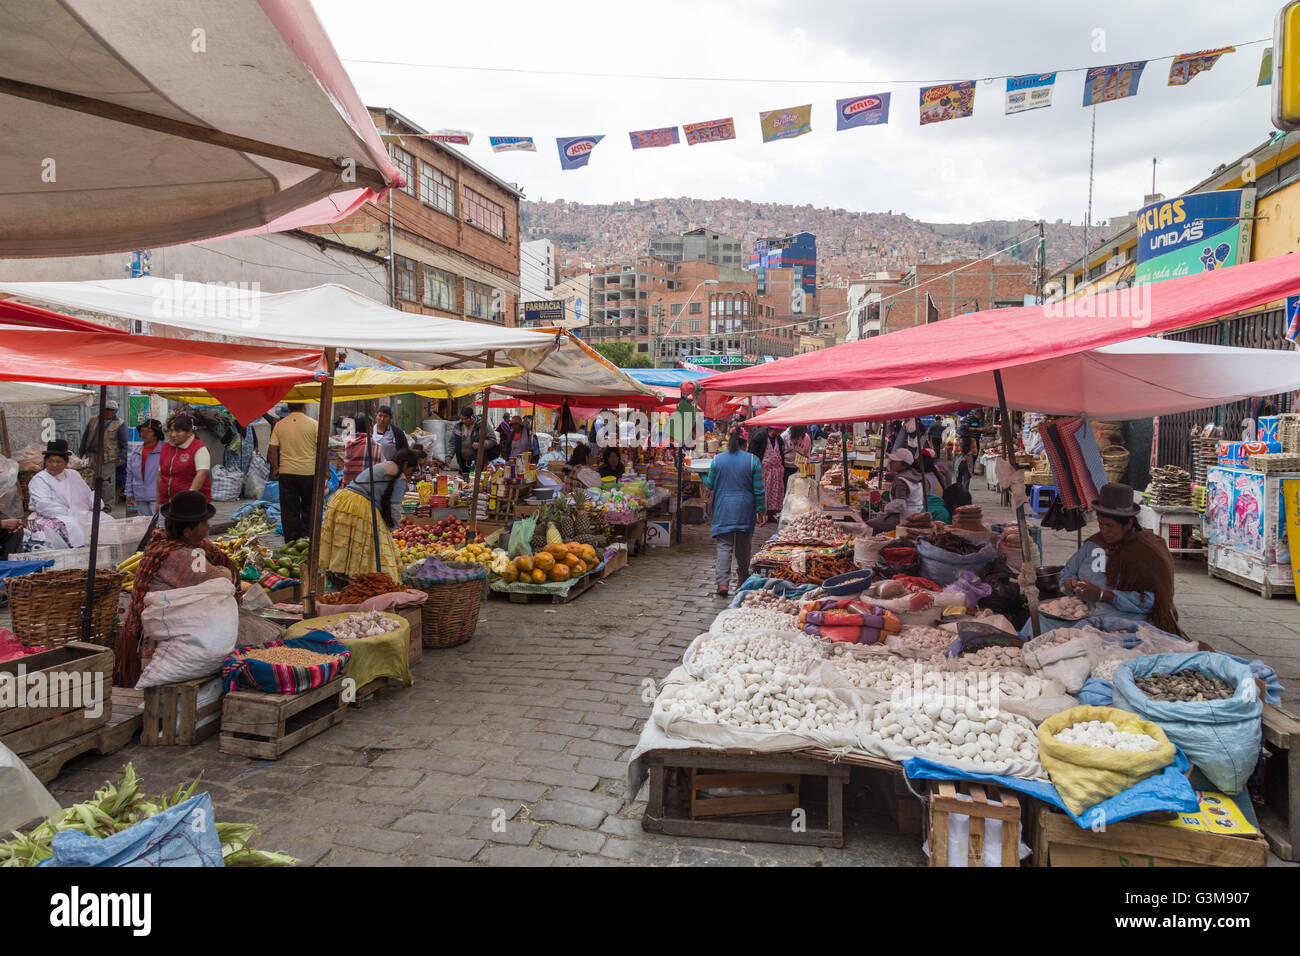 La Paz, Bolivia - Ottobre 24, 2015: la gente di vendita e di acquisto sul mercato di strada Foto Stock